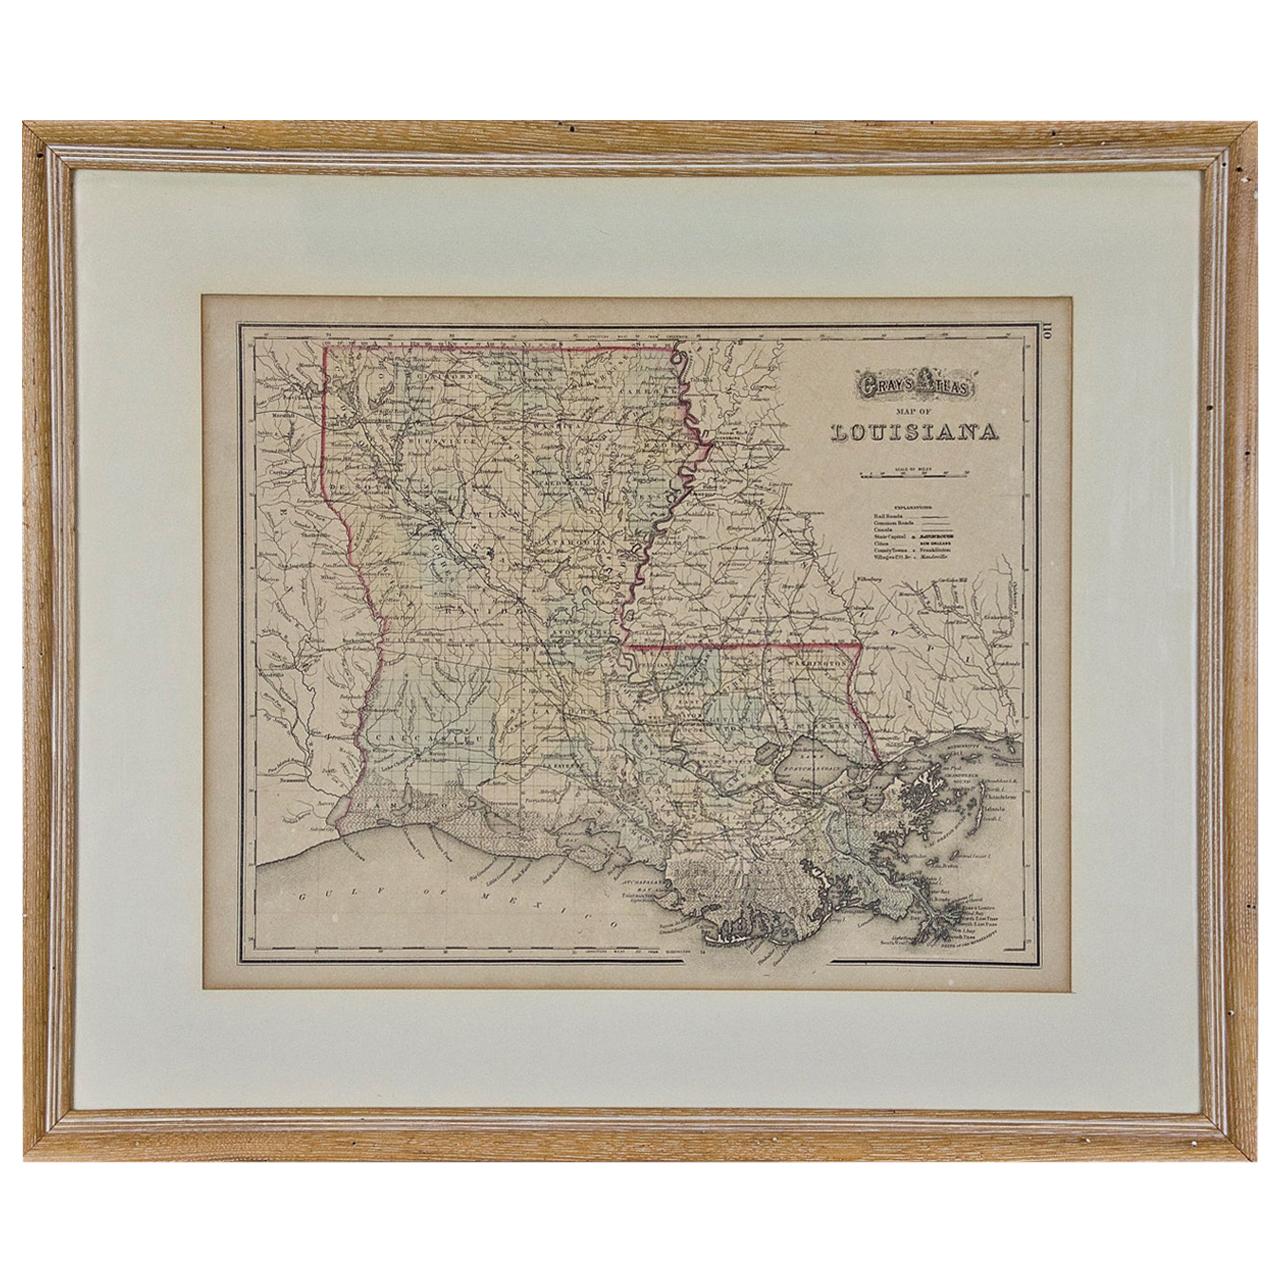 Louisiana: A Framed 19th Century Map by O. W. Gray